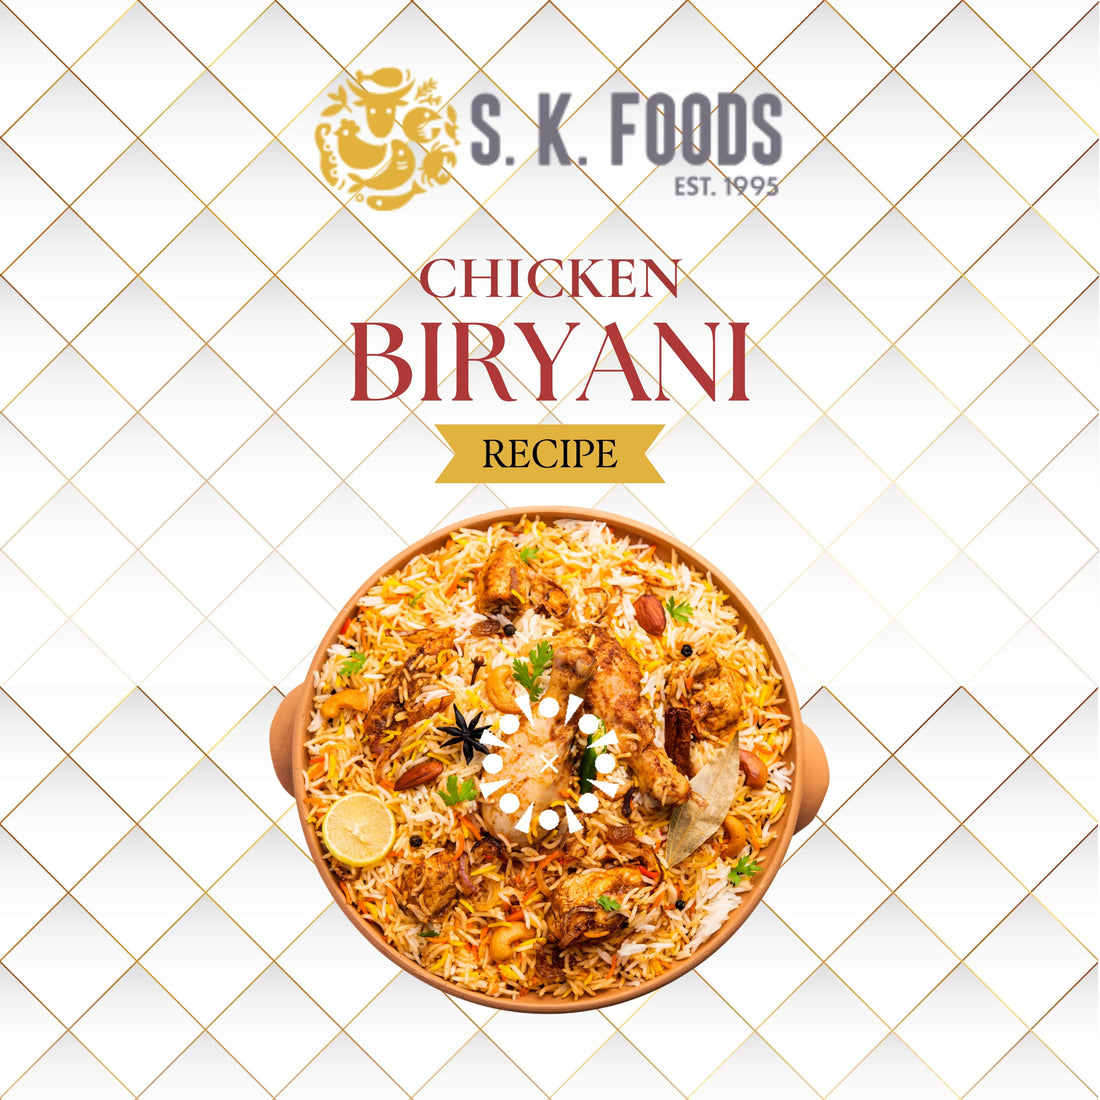 Chicken Biryani recipe